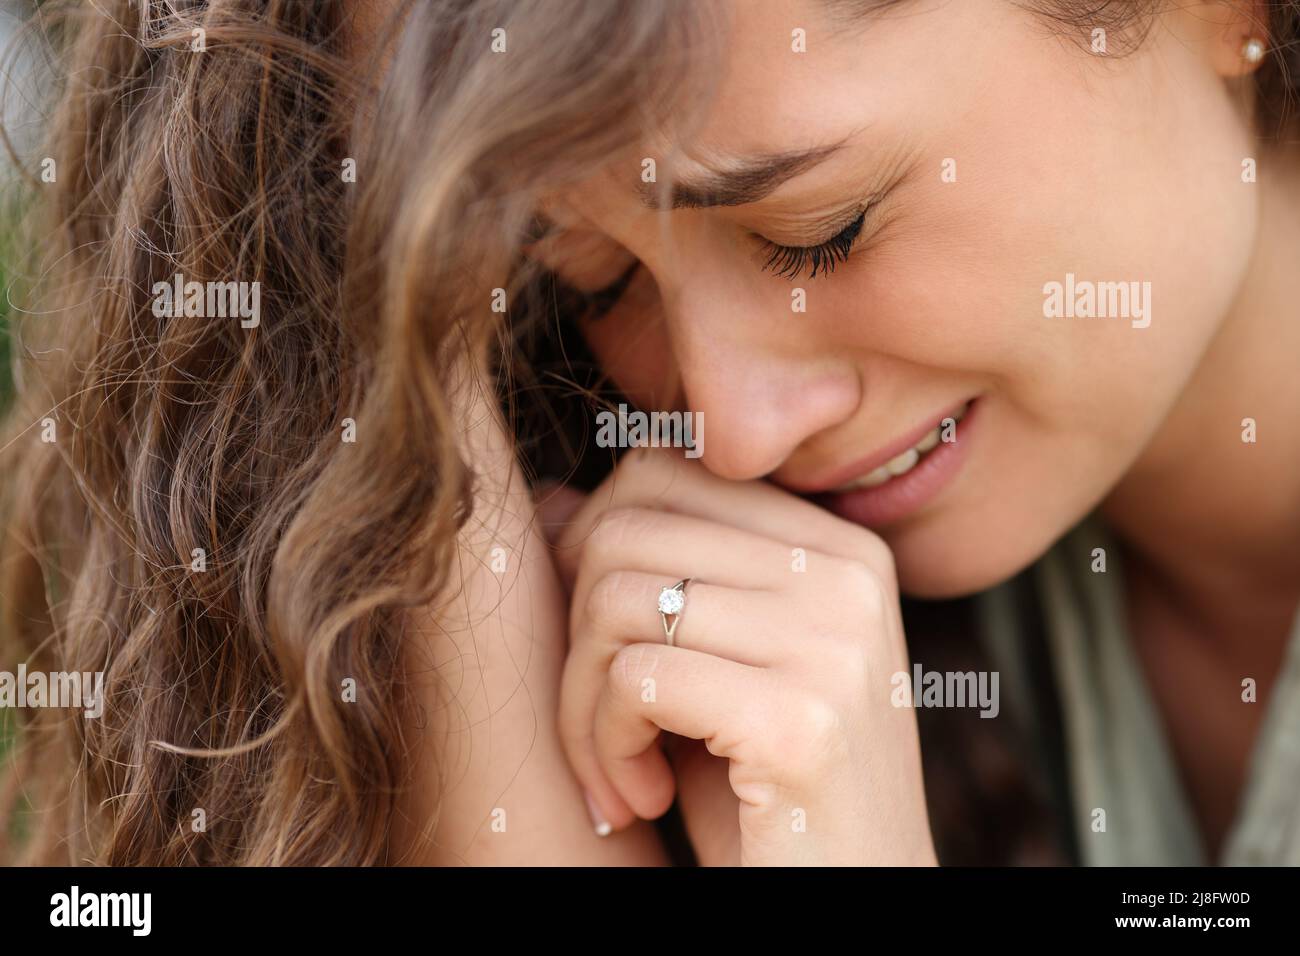 Traurige Frau nach der Verlobung, die sich alleine beschwert und einen Ring zeigt Stockfoto